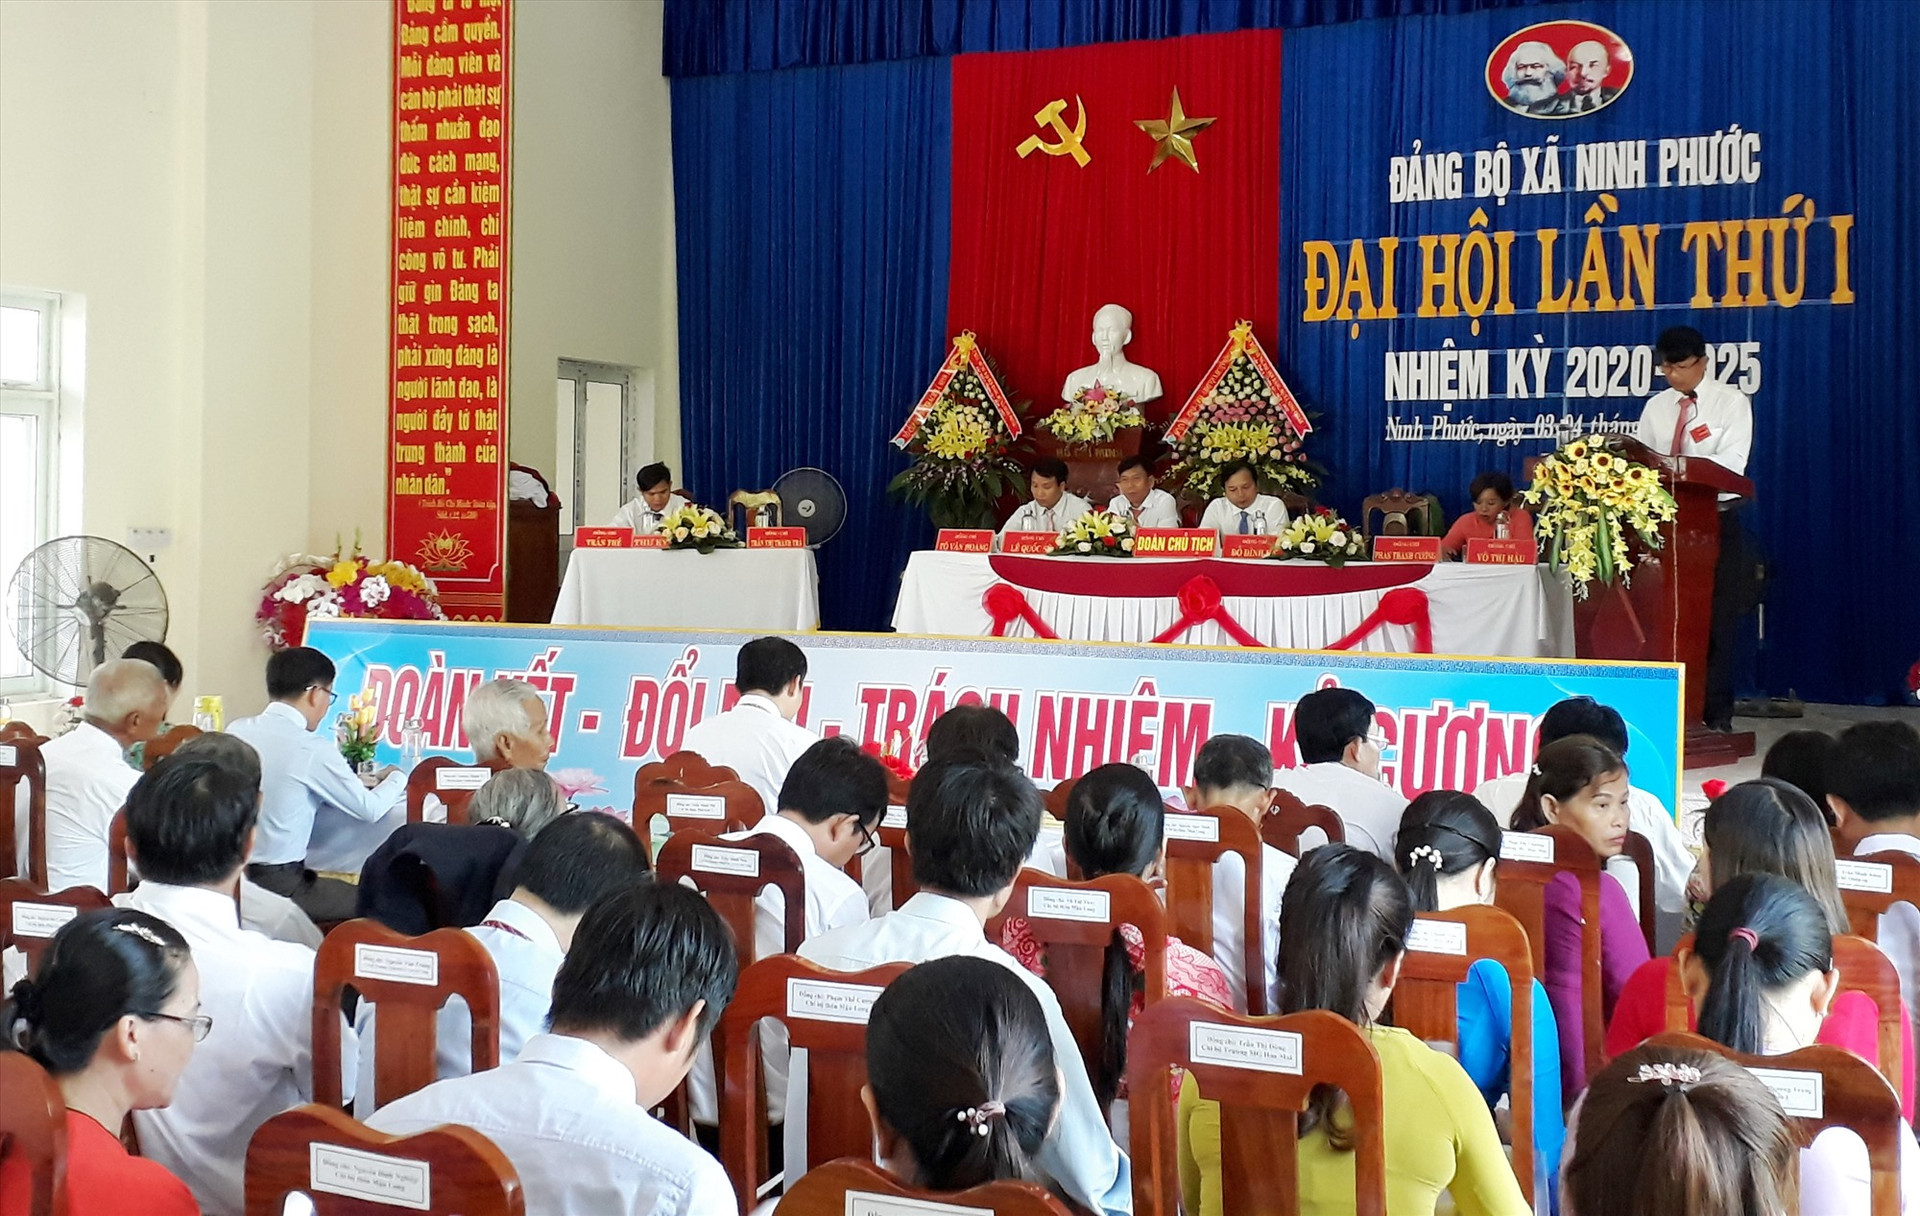 Quang cảnh đại hội Đảng bộ xã Ninh Phước (Nông Sơn) lần thứ I, nhiệm kỳ 2020 - 2025.